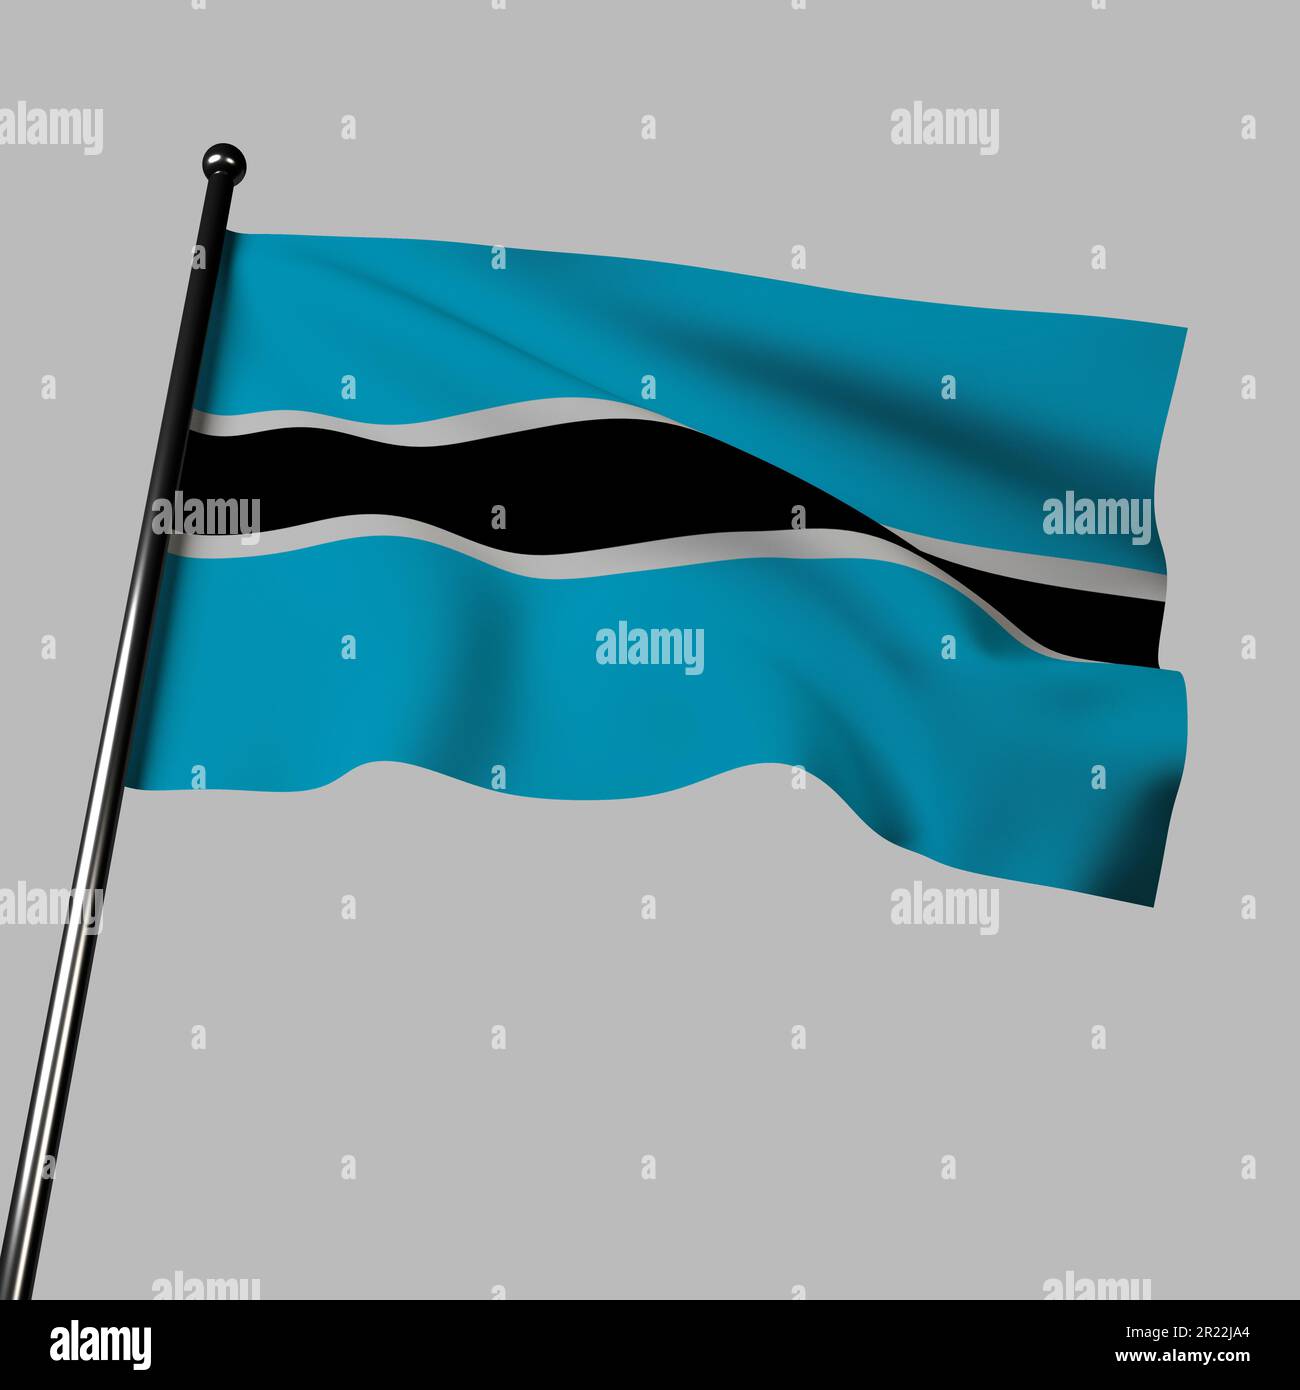 Ce rendu de 3D représente le drapeau du Botswana qui agite sur un fond gris. Le drapeau présente un arrière-plan bleu clair avec une bande verticale noire et un Banque D'Images